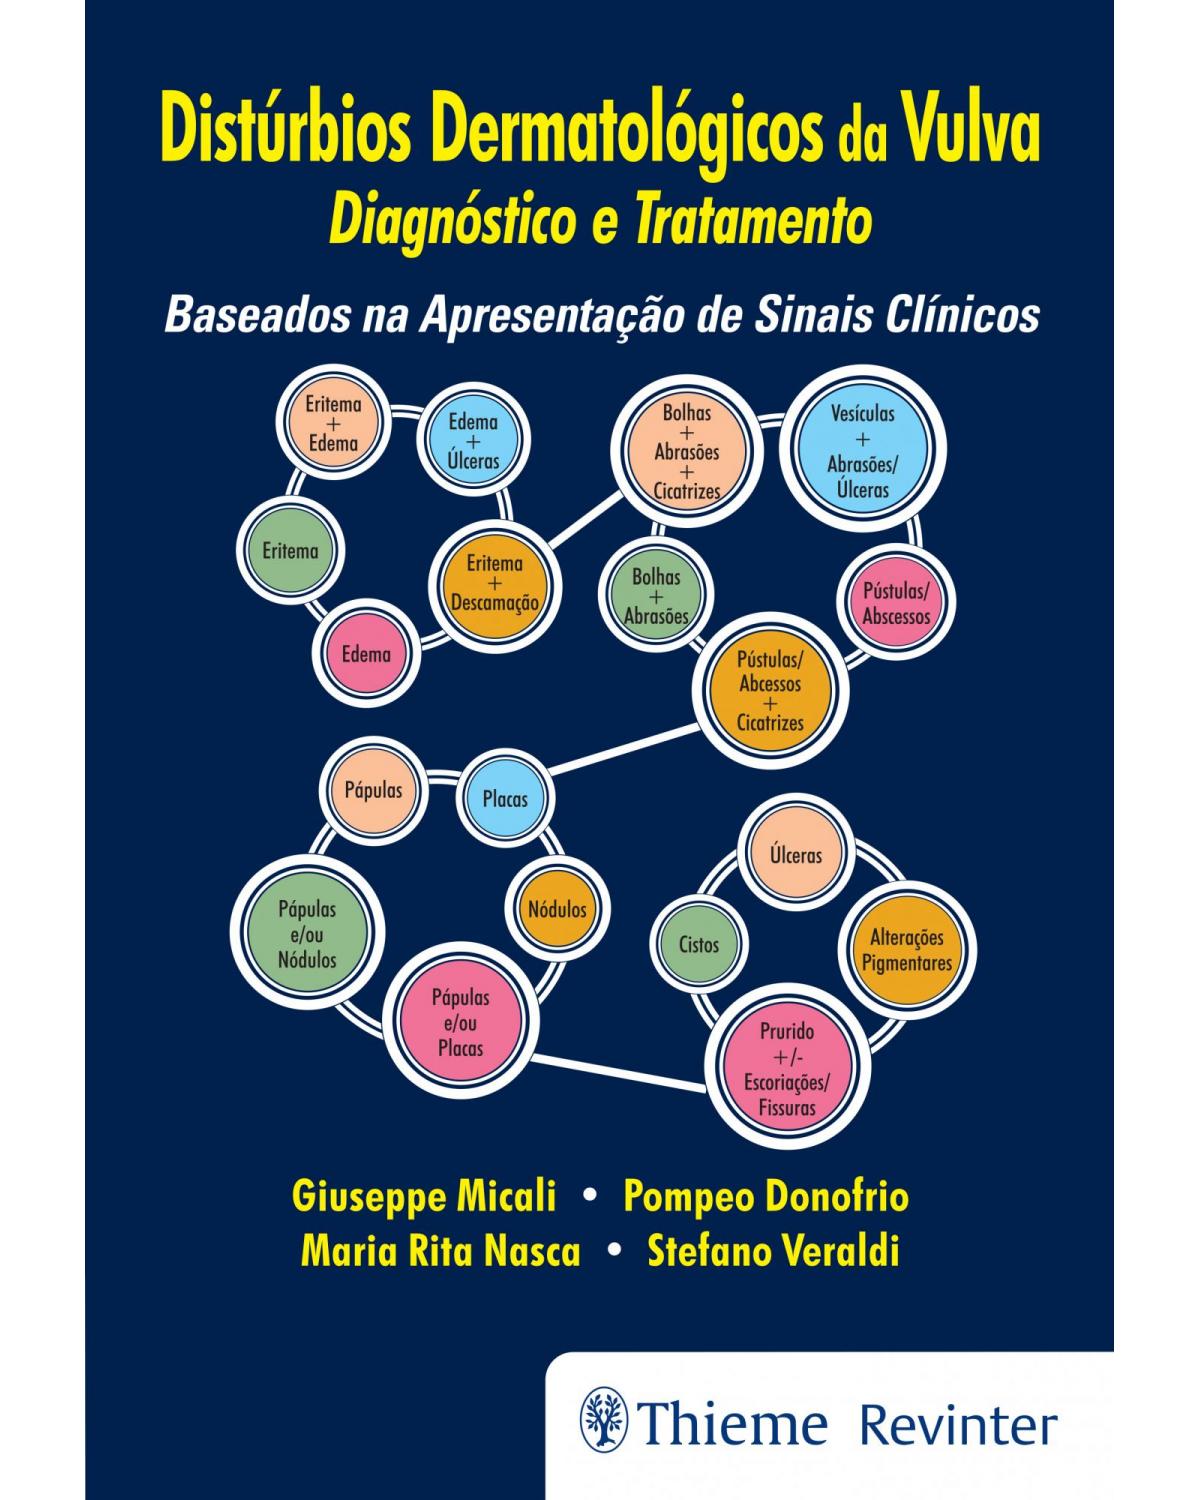 Distúrbios dermatológicos da vulva - diagnóstico e tratamento - 1ª Edição | 2017